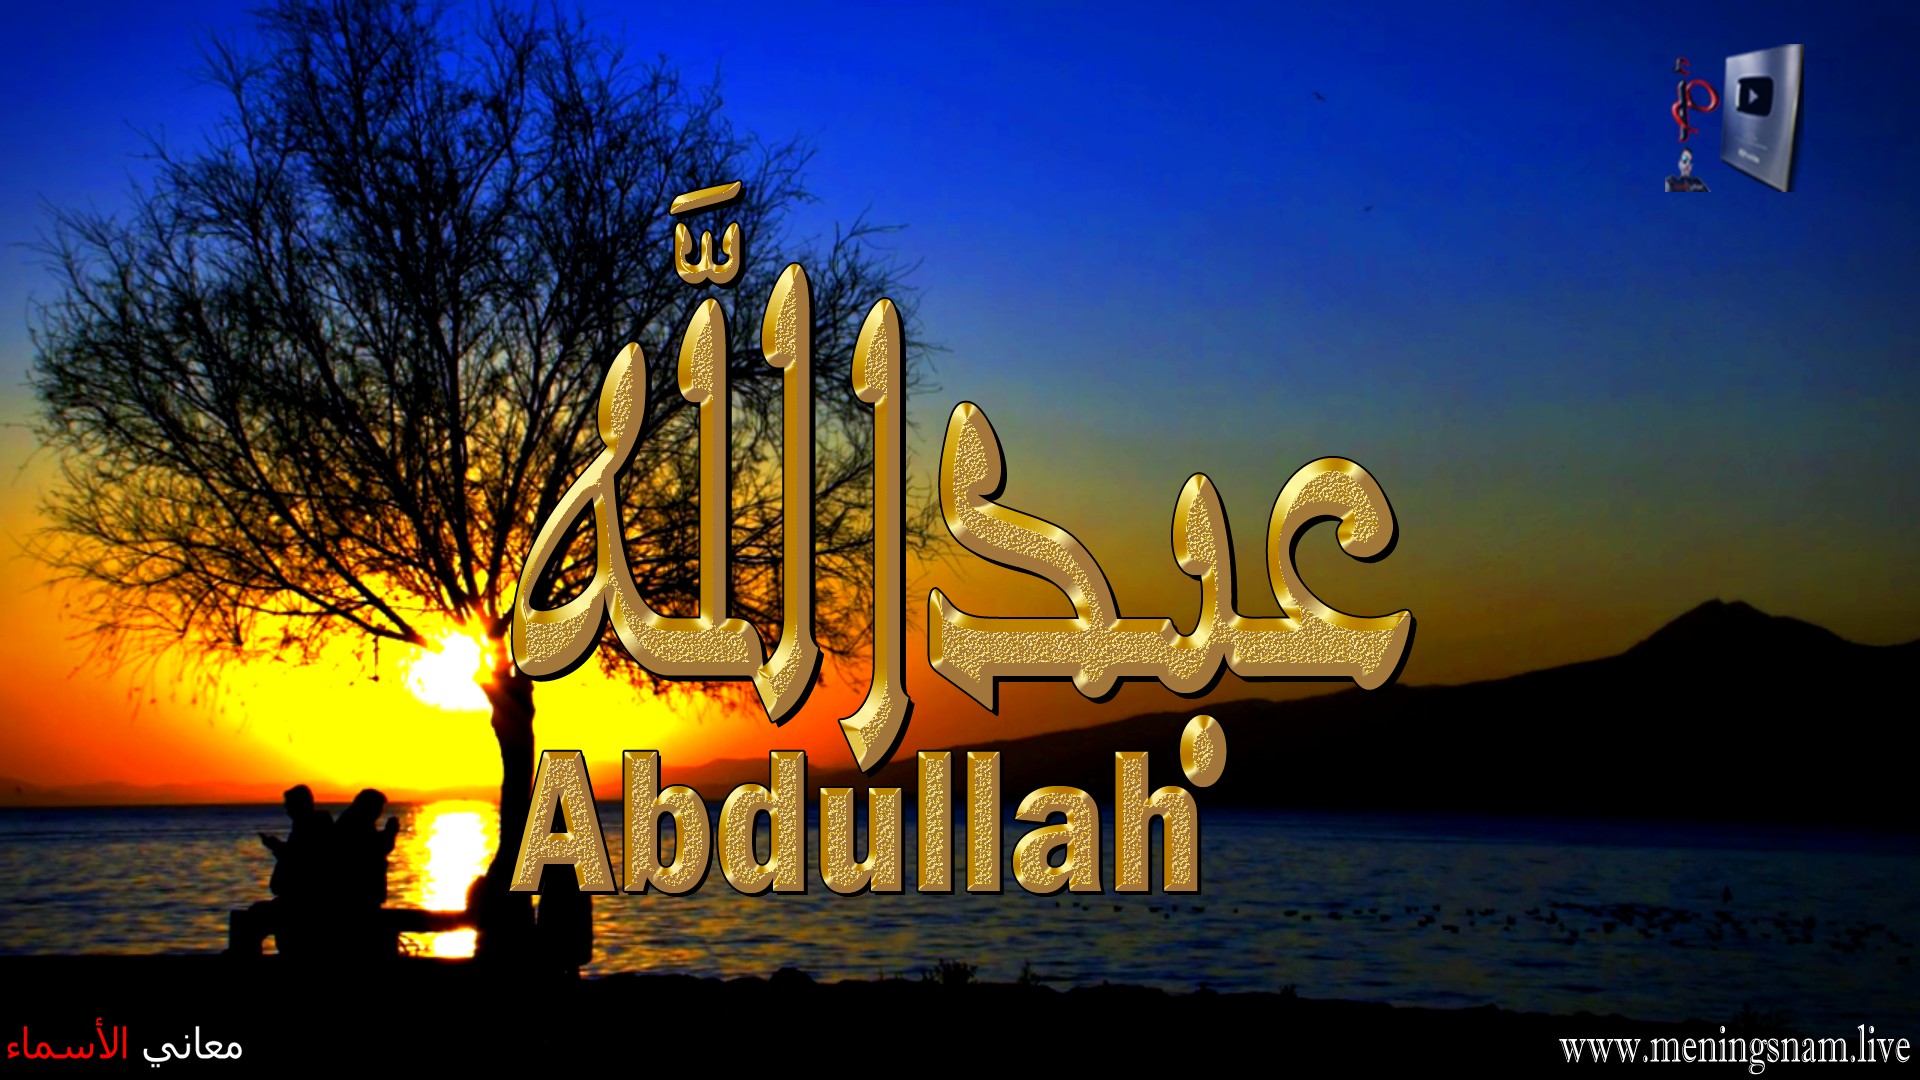 معنى اسم, عبد الله, وصفات, حامل, هذا الاسم, Abdullah,